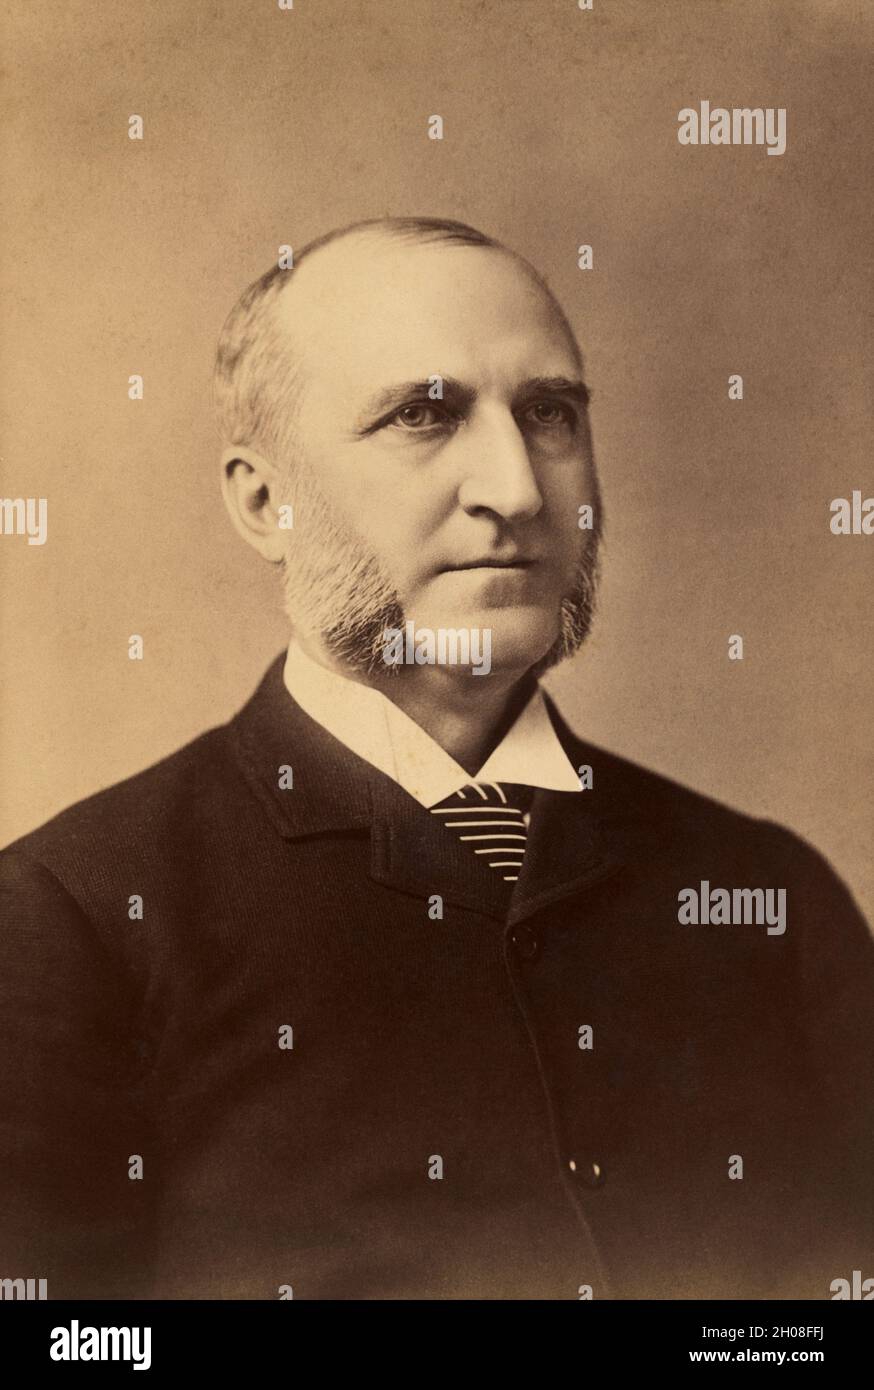 Chaucey Depew (1834-1928), avocat américain, homme d'affaires et politicien républicain, sénateur américain de New York, chef et épaules Portrait, Fredricks Knickerbocker Studio, 1888 Banque D'Images